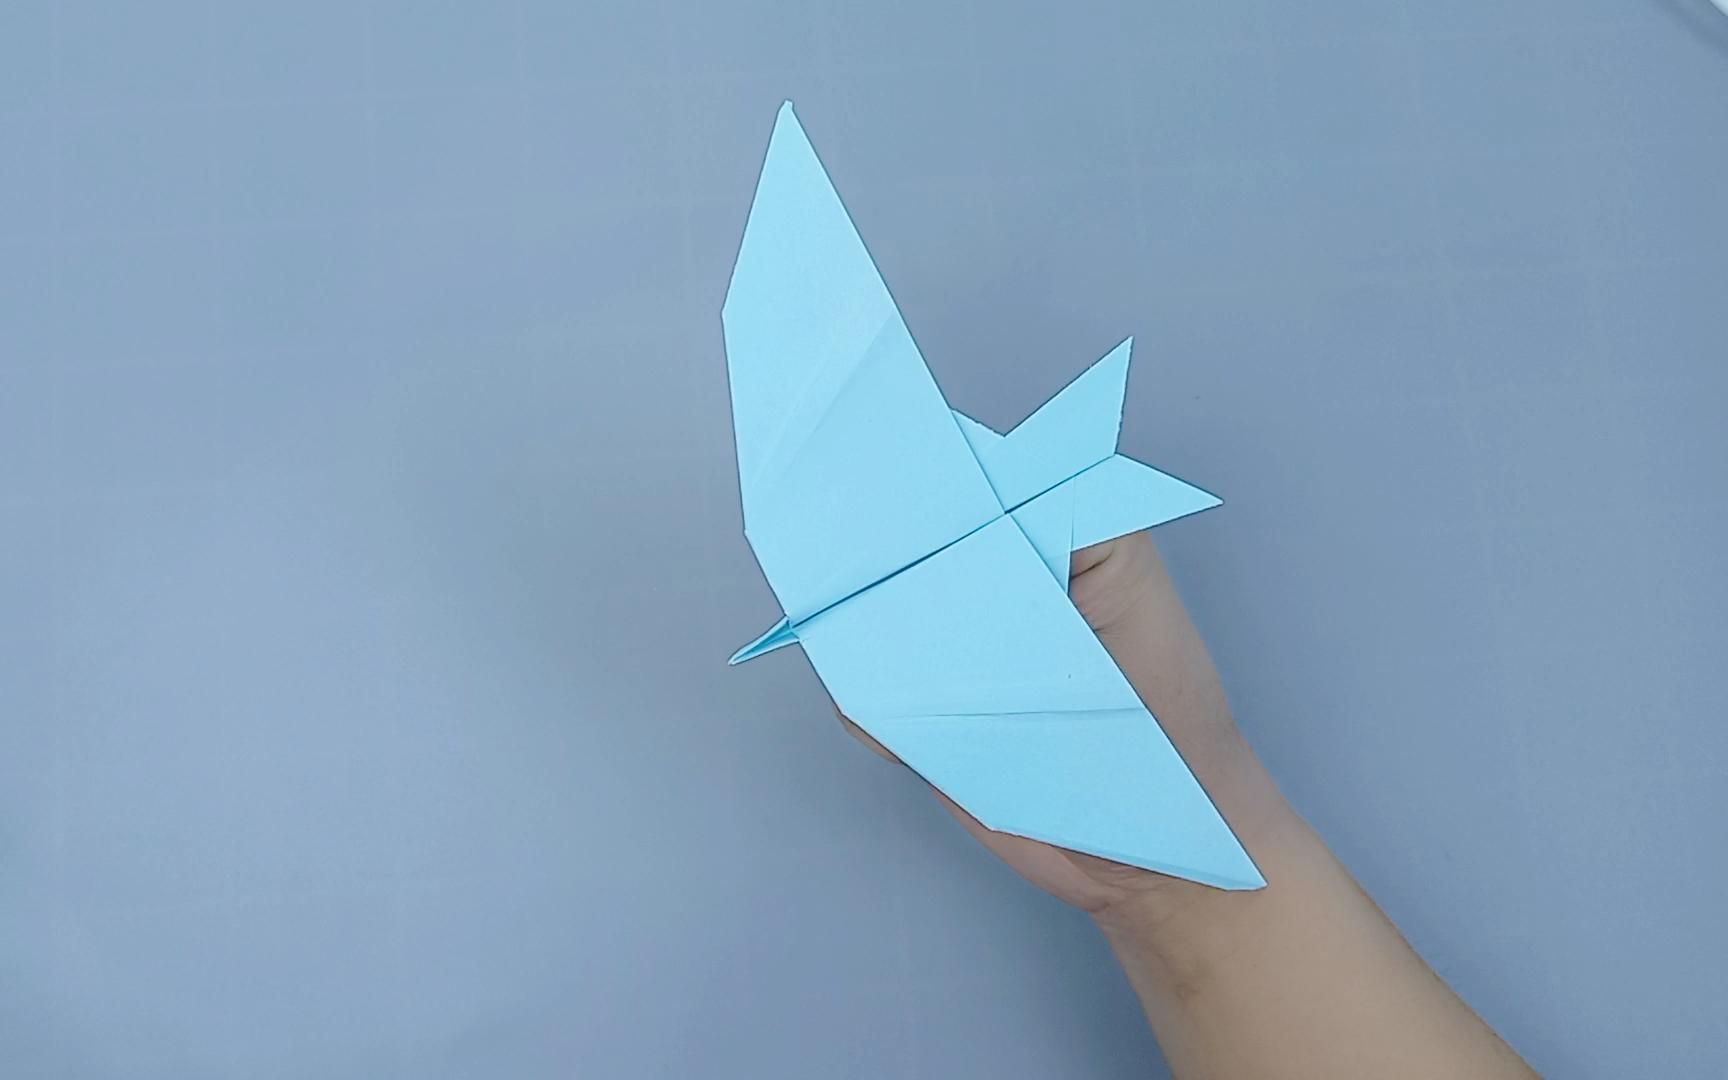 机动灵活的燕子纸飞机,战斗机中的王者